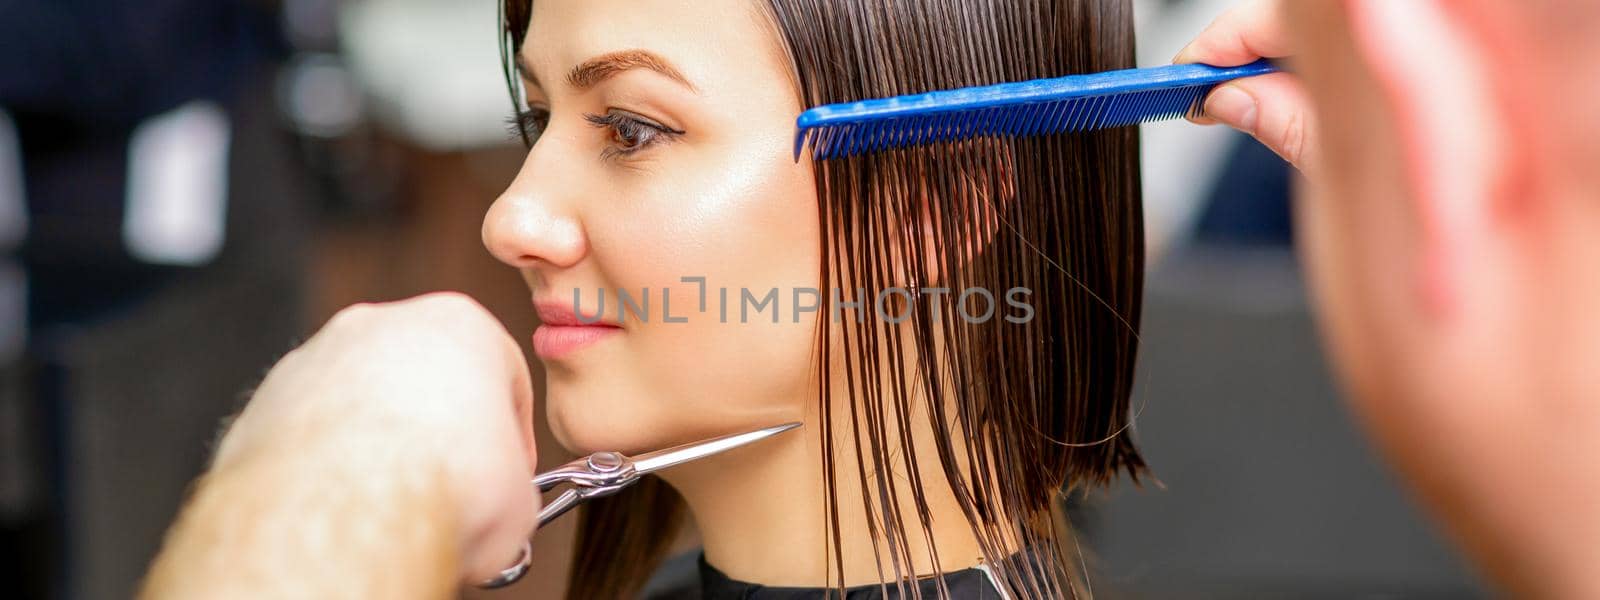 Hairdresser cuts wet hair of woman by okskukuruza